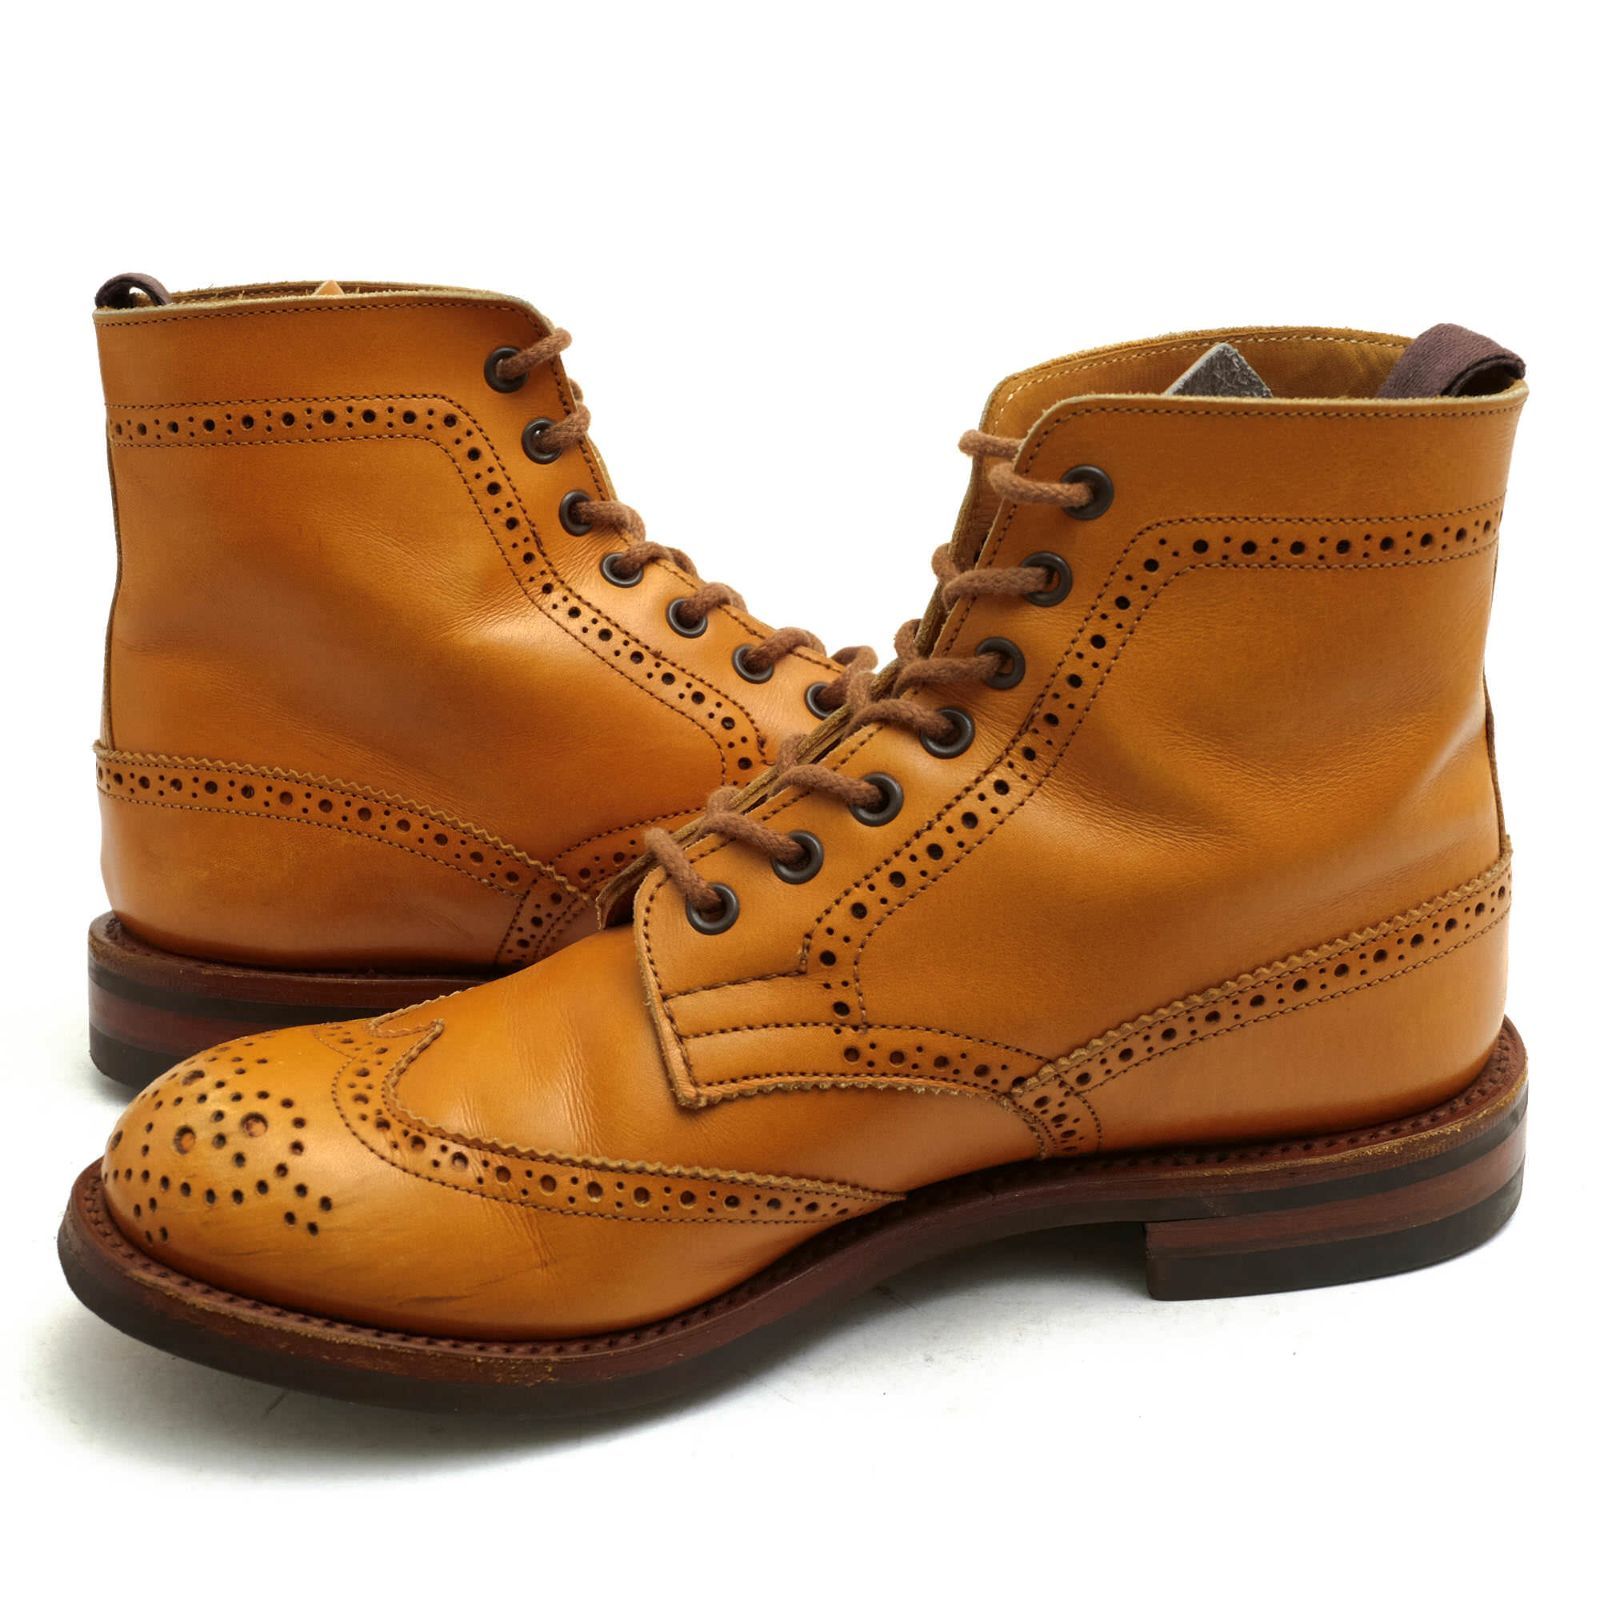 トリッカーズ／Tricker's レースアップブーツ シューズ 靴 メンズ 男性 男性用レザー 革 本革 ブラウン 茶  M2508 MALTON モールトン Brogue Boots ダブルソール カントリーブーツ ウイングチップ 定番 グッドイヤーウェルト製法